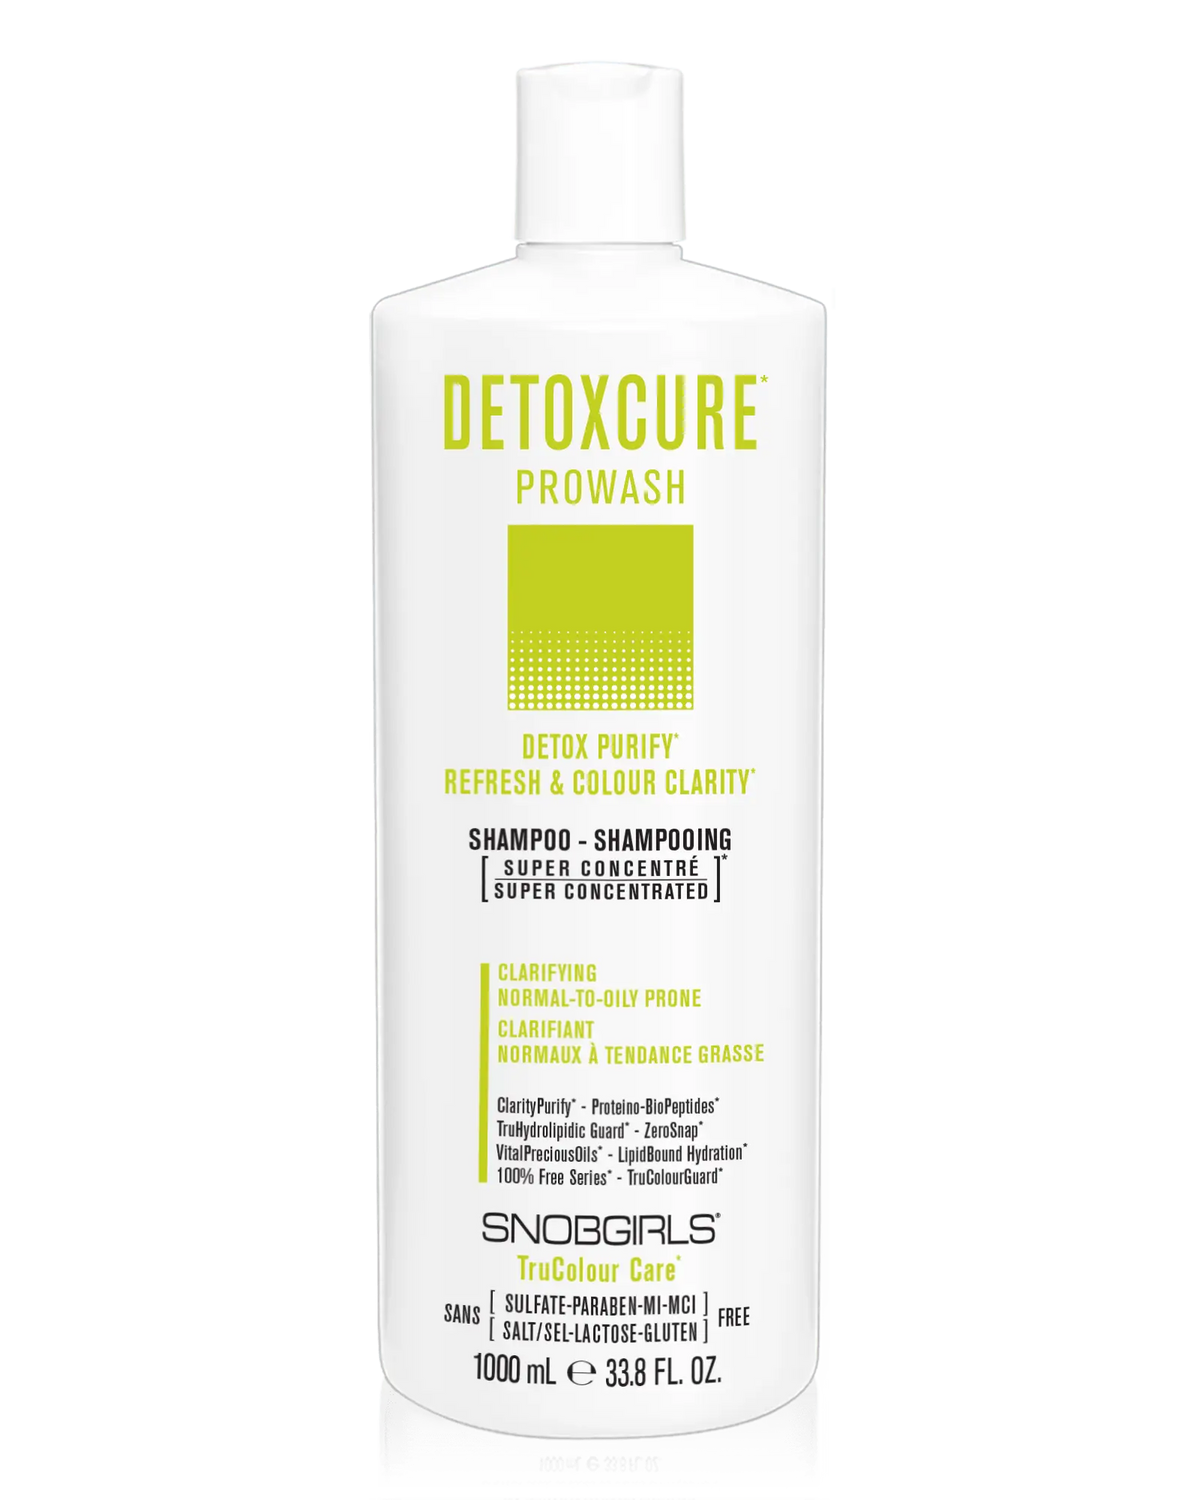 DETOXCURE Prowash (shampoo) 33.8 FL. OZ. - SNOBGIRLS.com